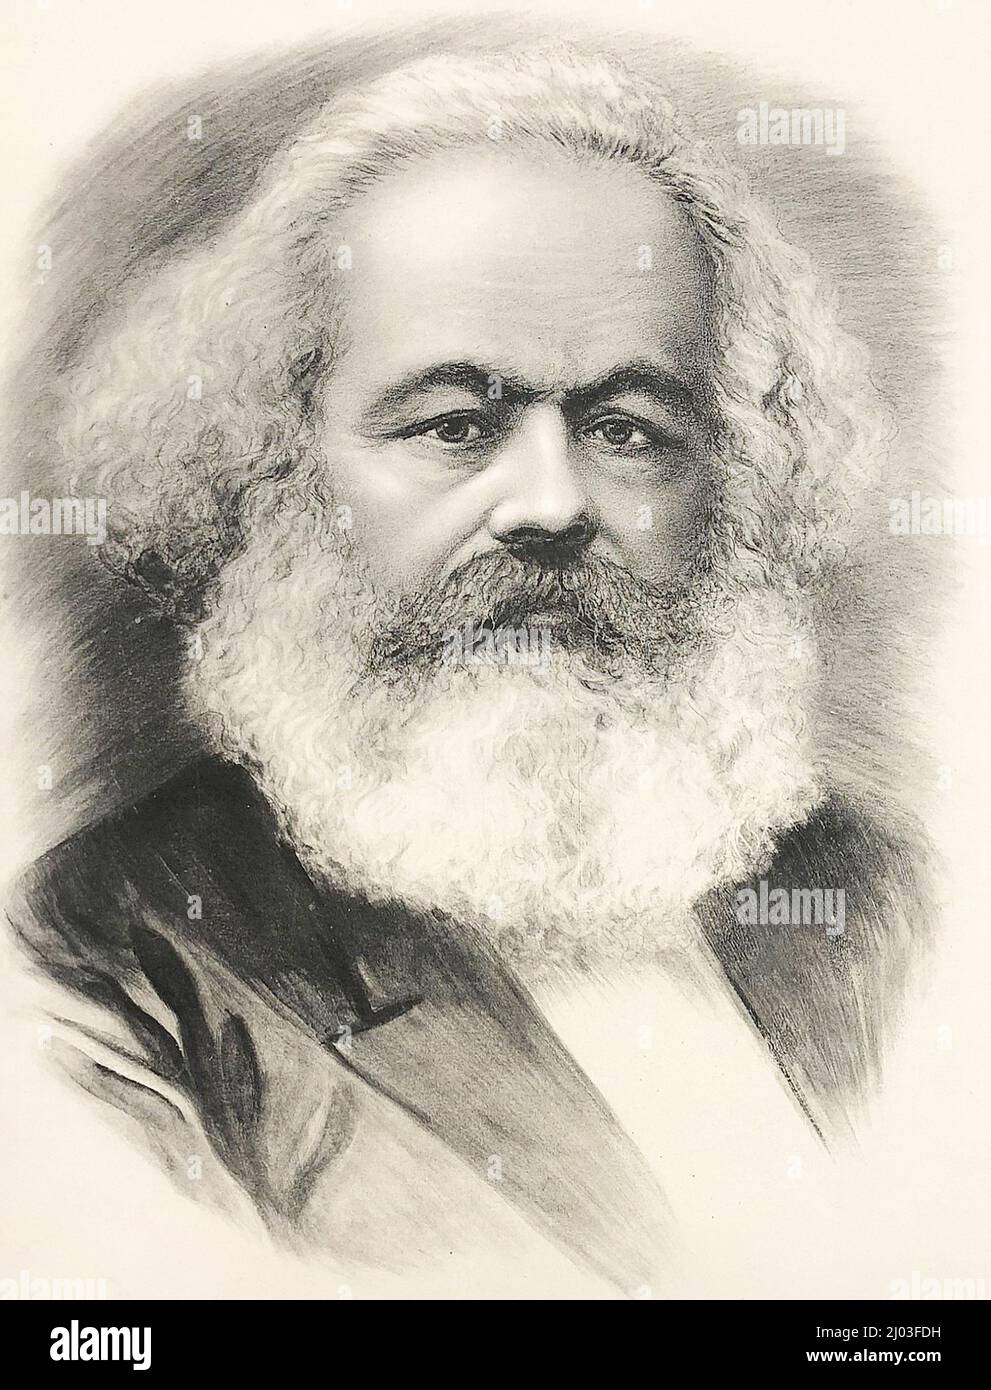 Portrait of Karl Marx. Stock Photo